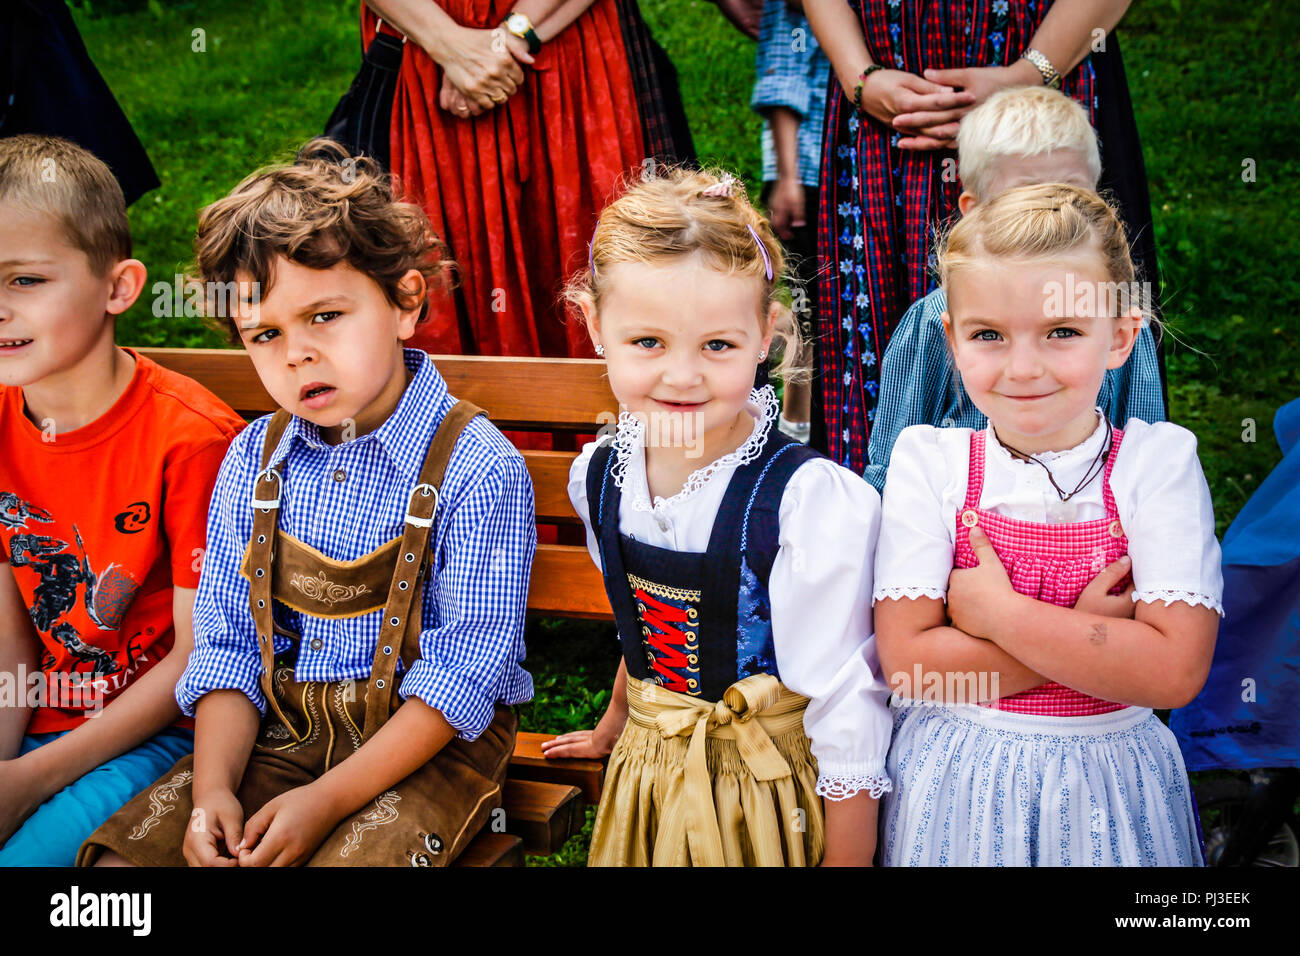 Children in Tyrolean traditional dress of lederhosen for boys and ...